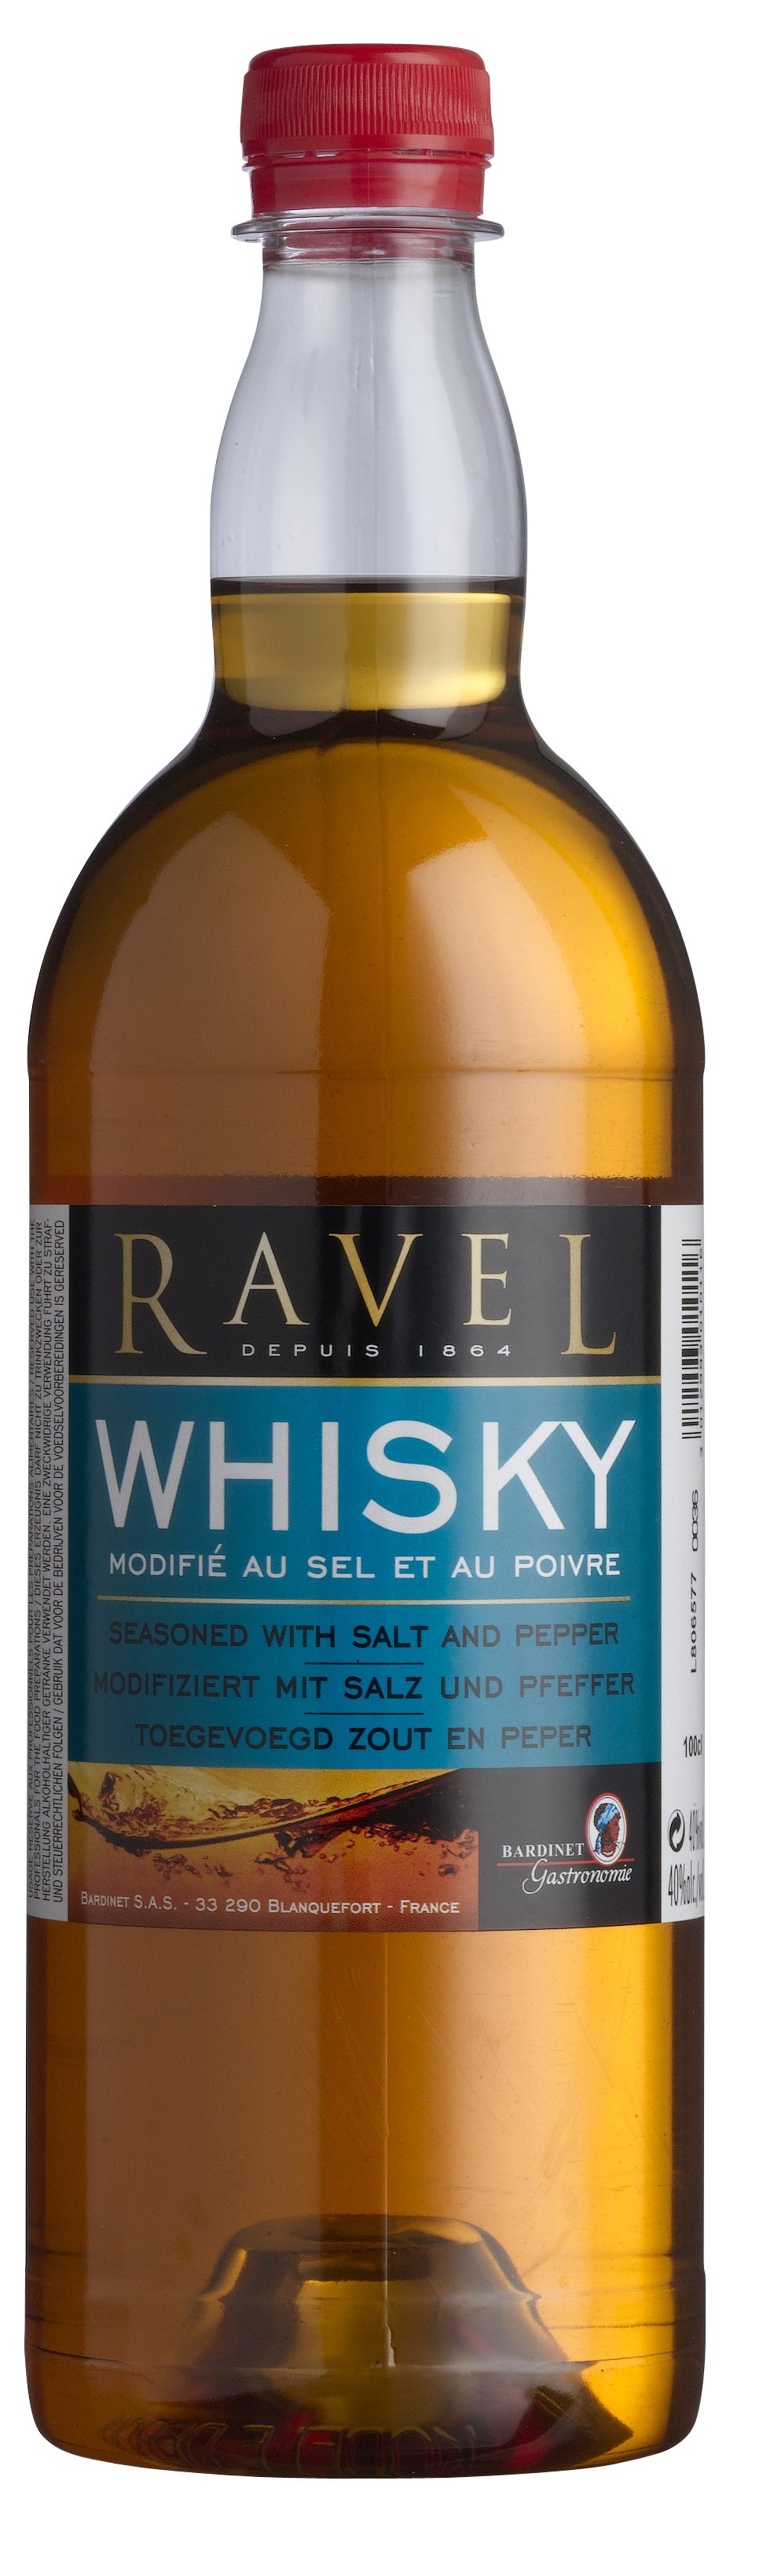 47168 Ravel whisky pet fles 1ltr